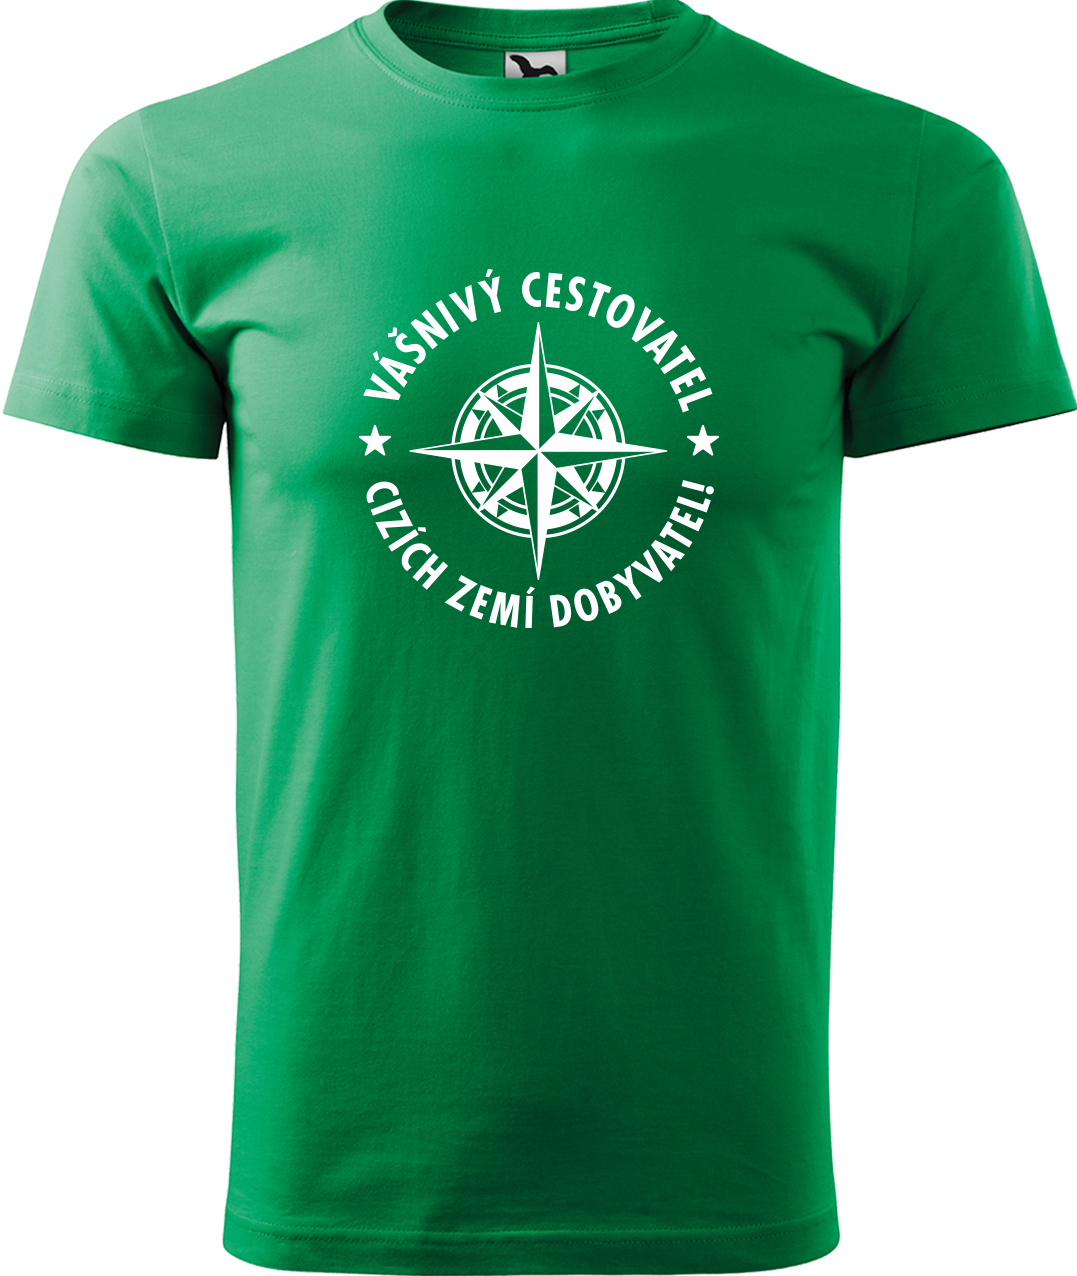 Pánské cestovatelské tričko - Vášnivý cestovatel, cizích zemí dobyvatel Velikost: S, Barva: Středně zelená (16), Střih: pánský